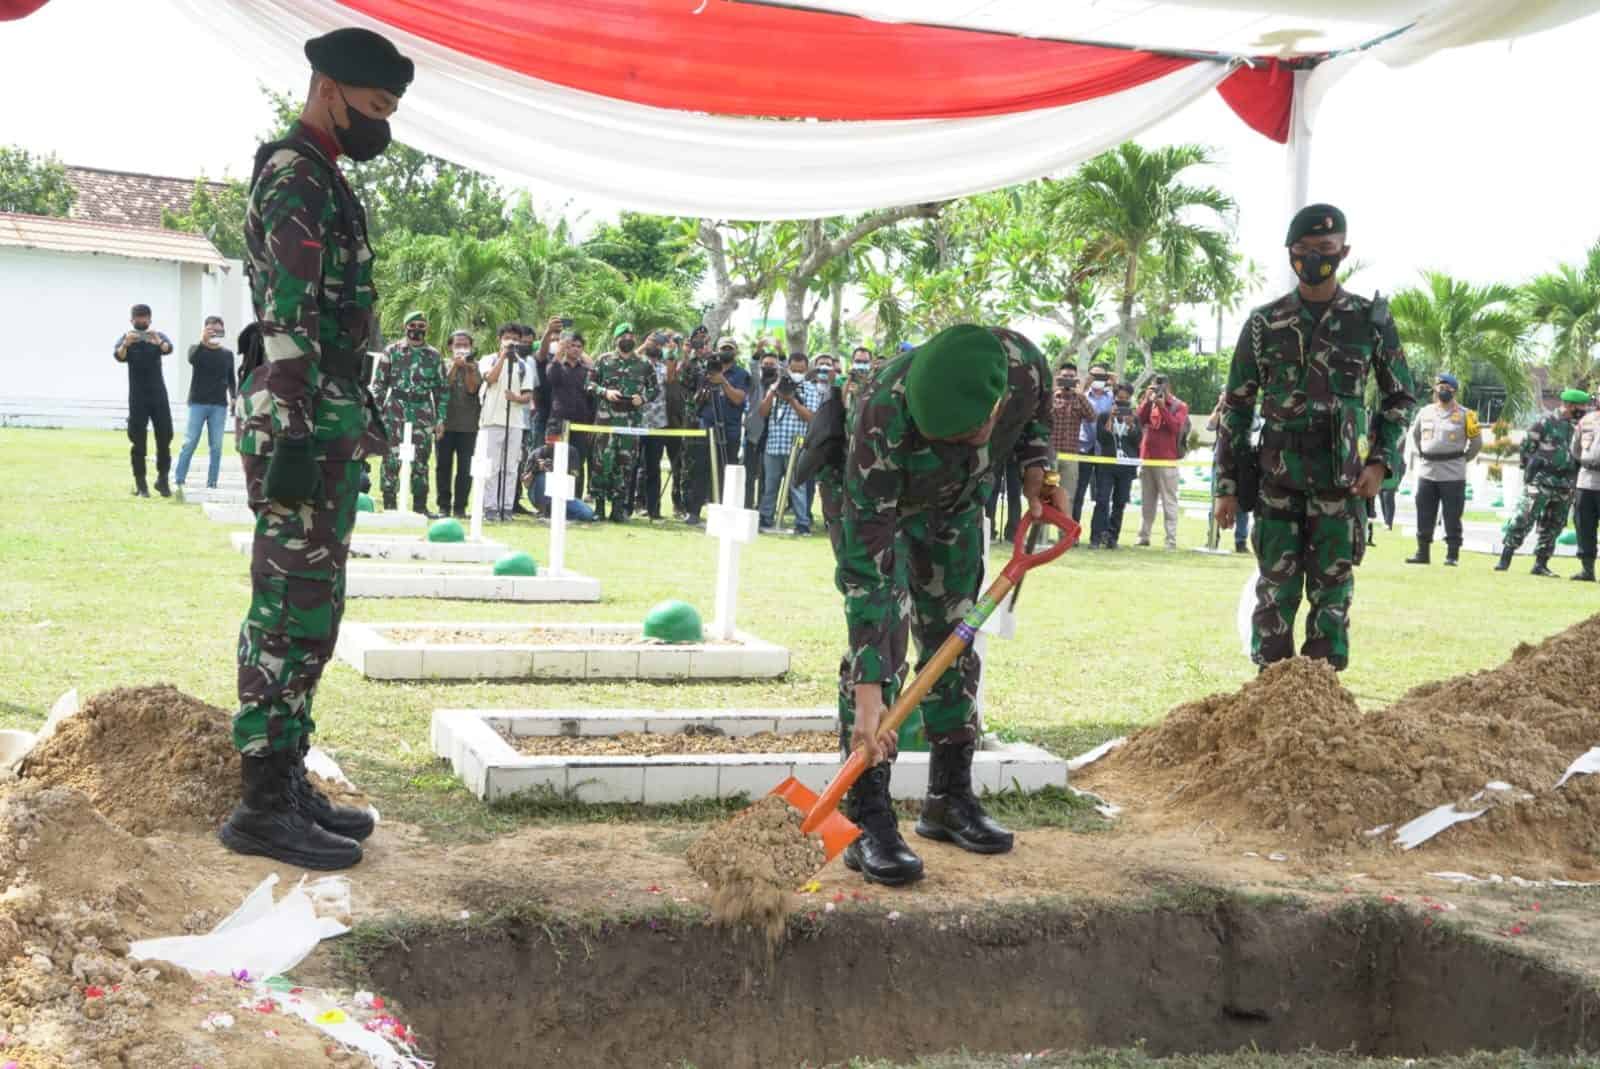 Pangdam II/Sriwijaya Pimpin Upacara Pemakaman Praka Anumerta Tumpal Halomoan Barasa, Prajurit TNI AD Asal Jambi Yang Gugur di Papua